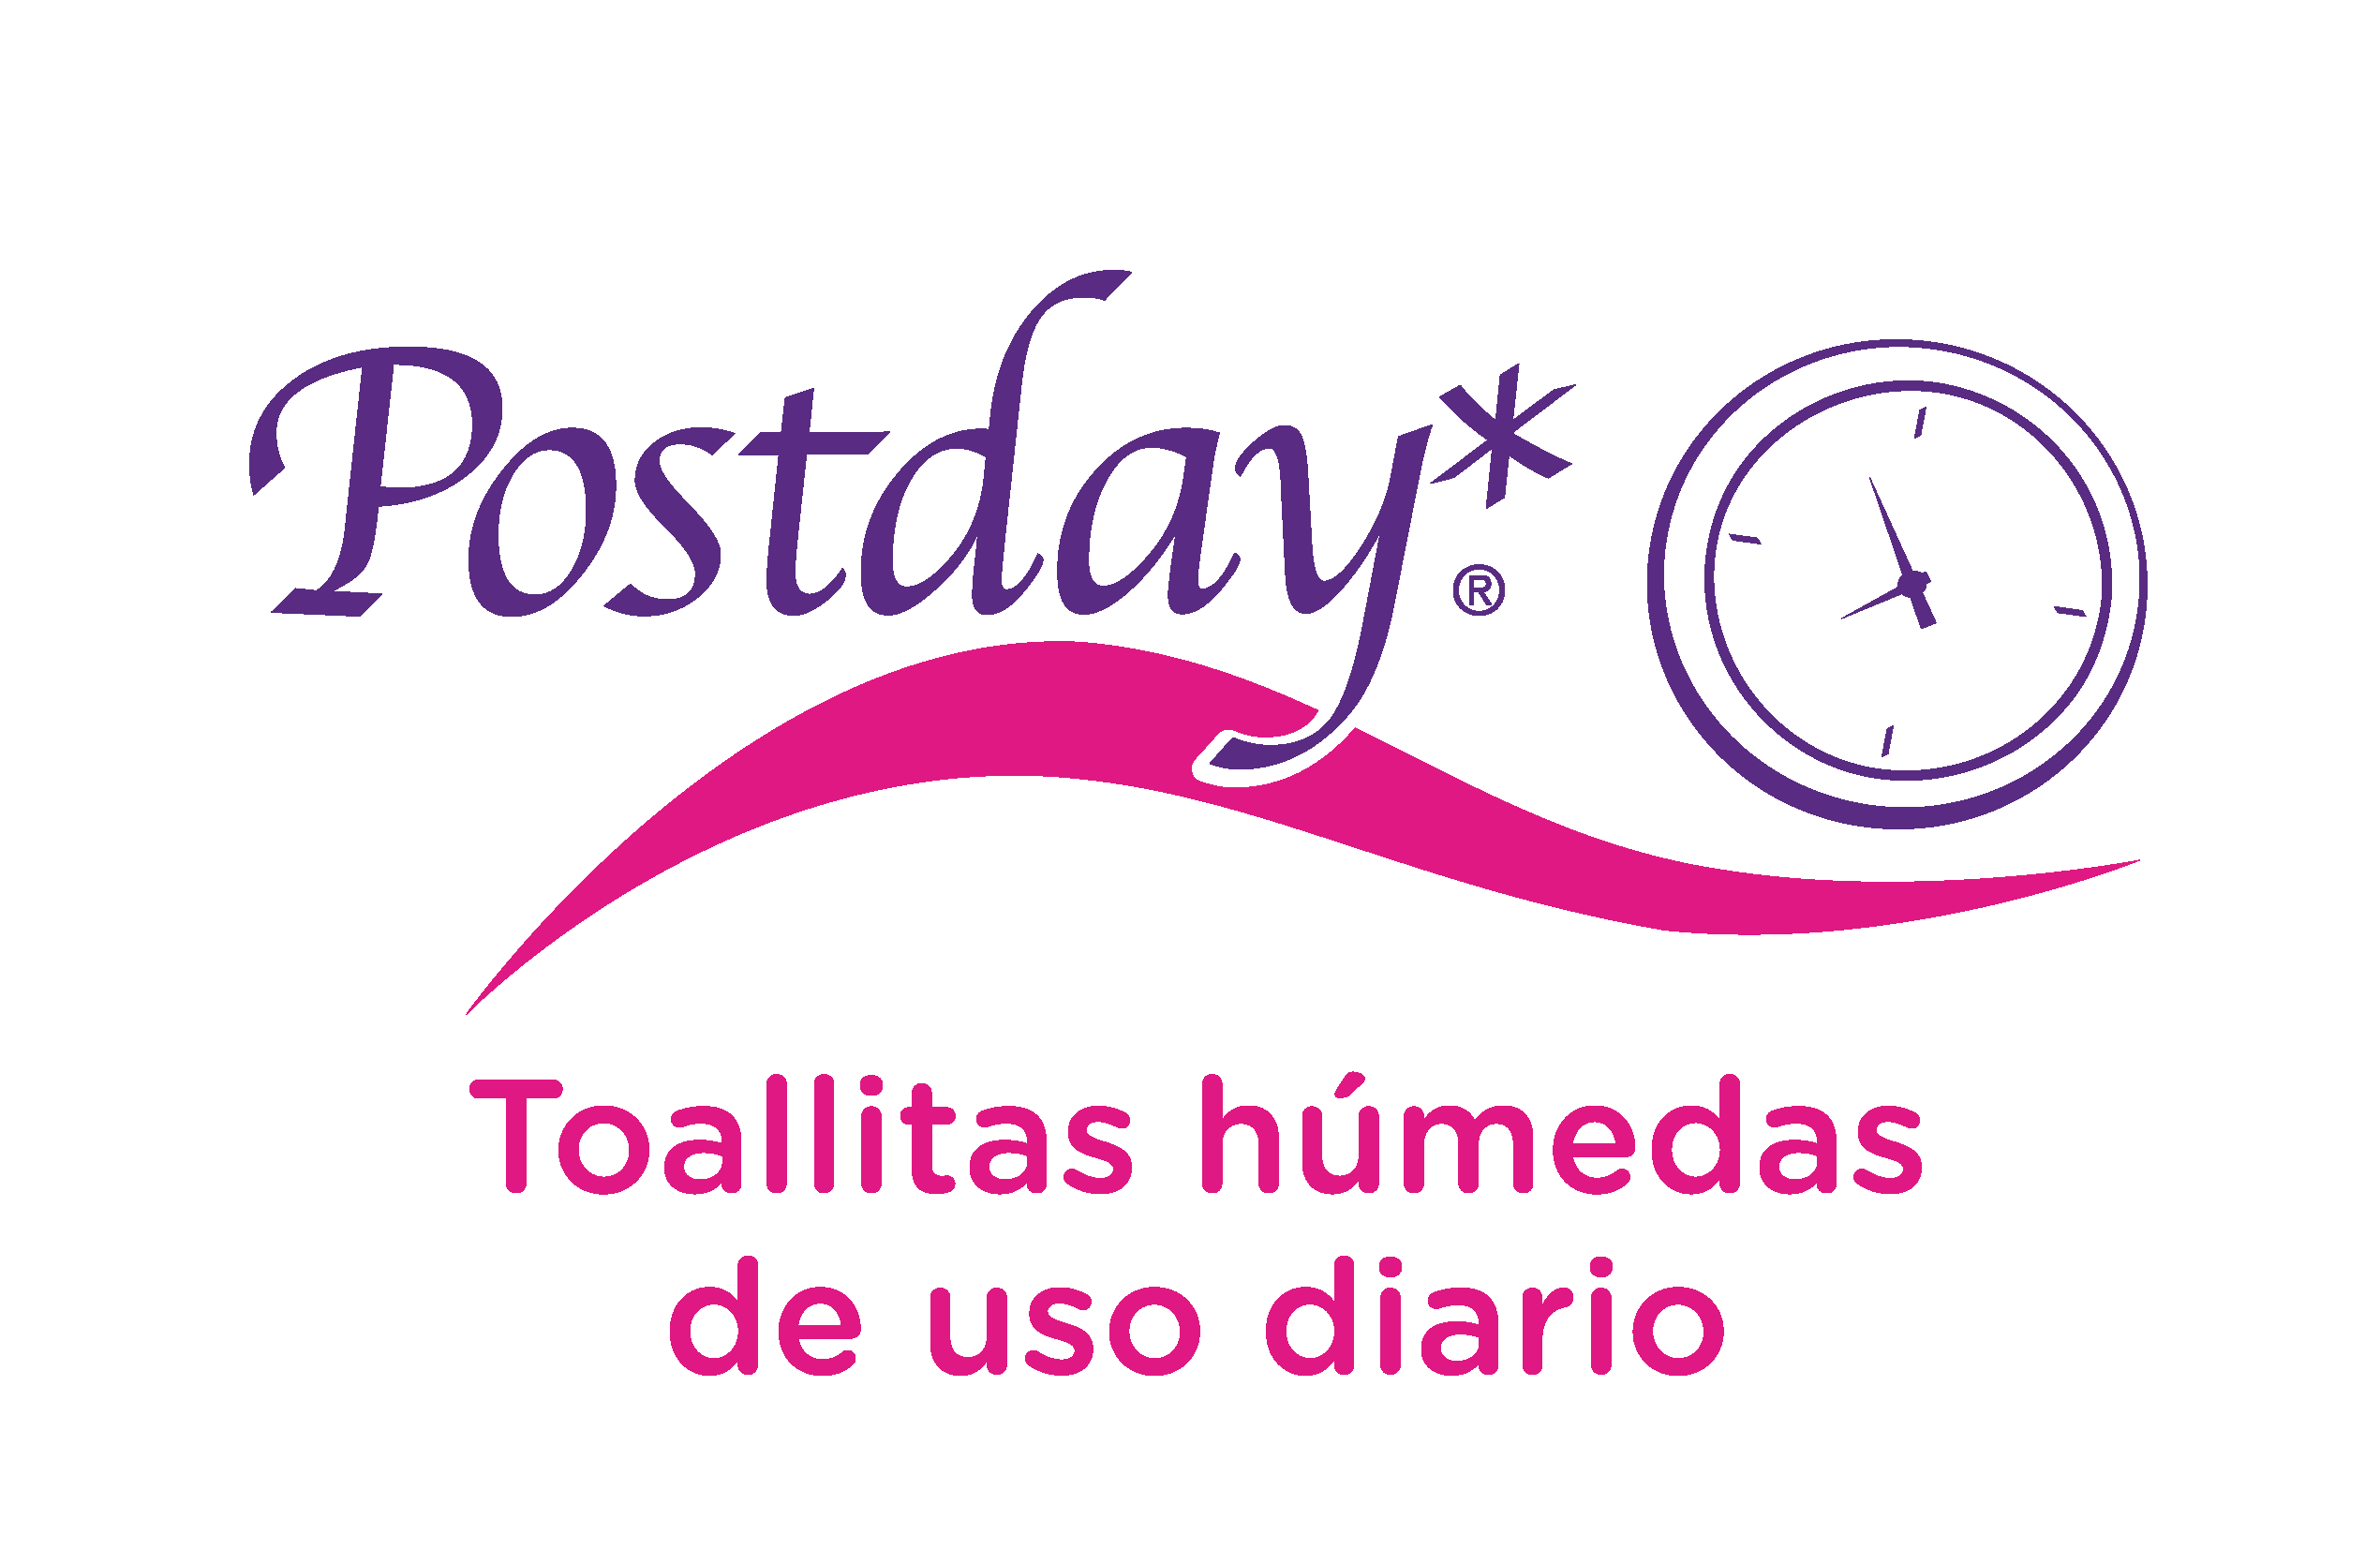 IFA logo_POSTDAY_TAOLLITAS_2023